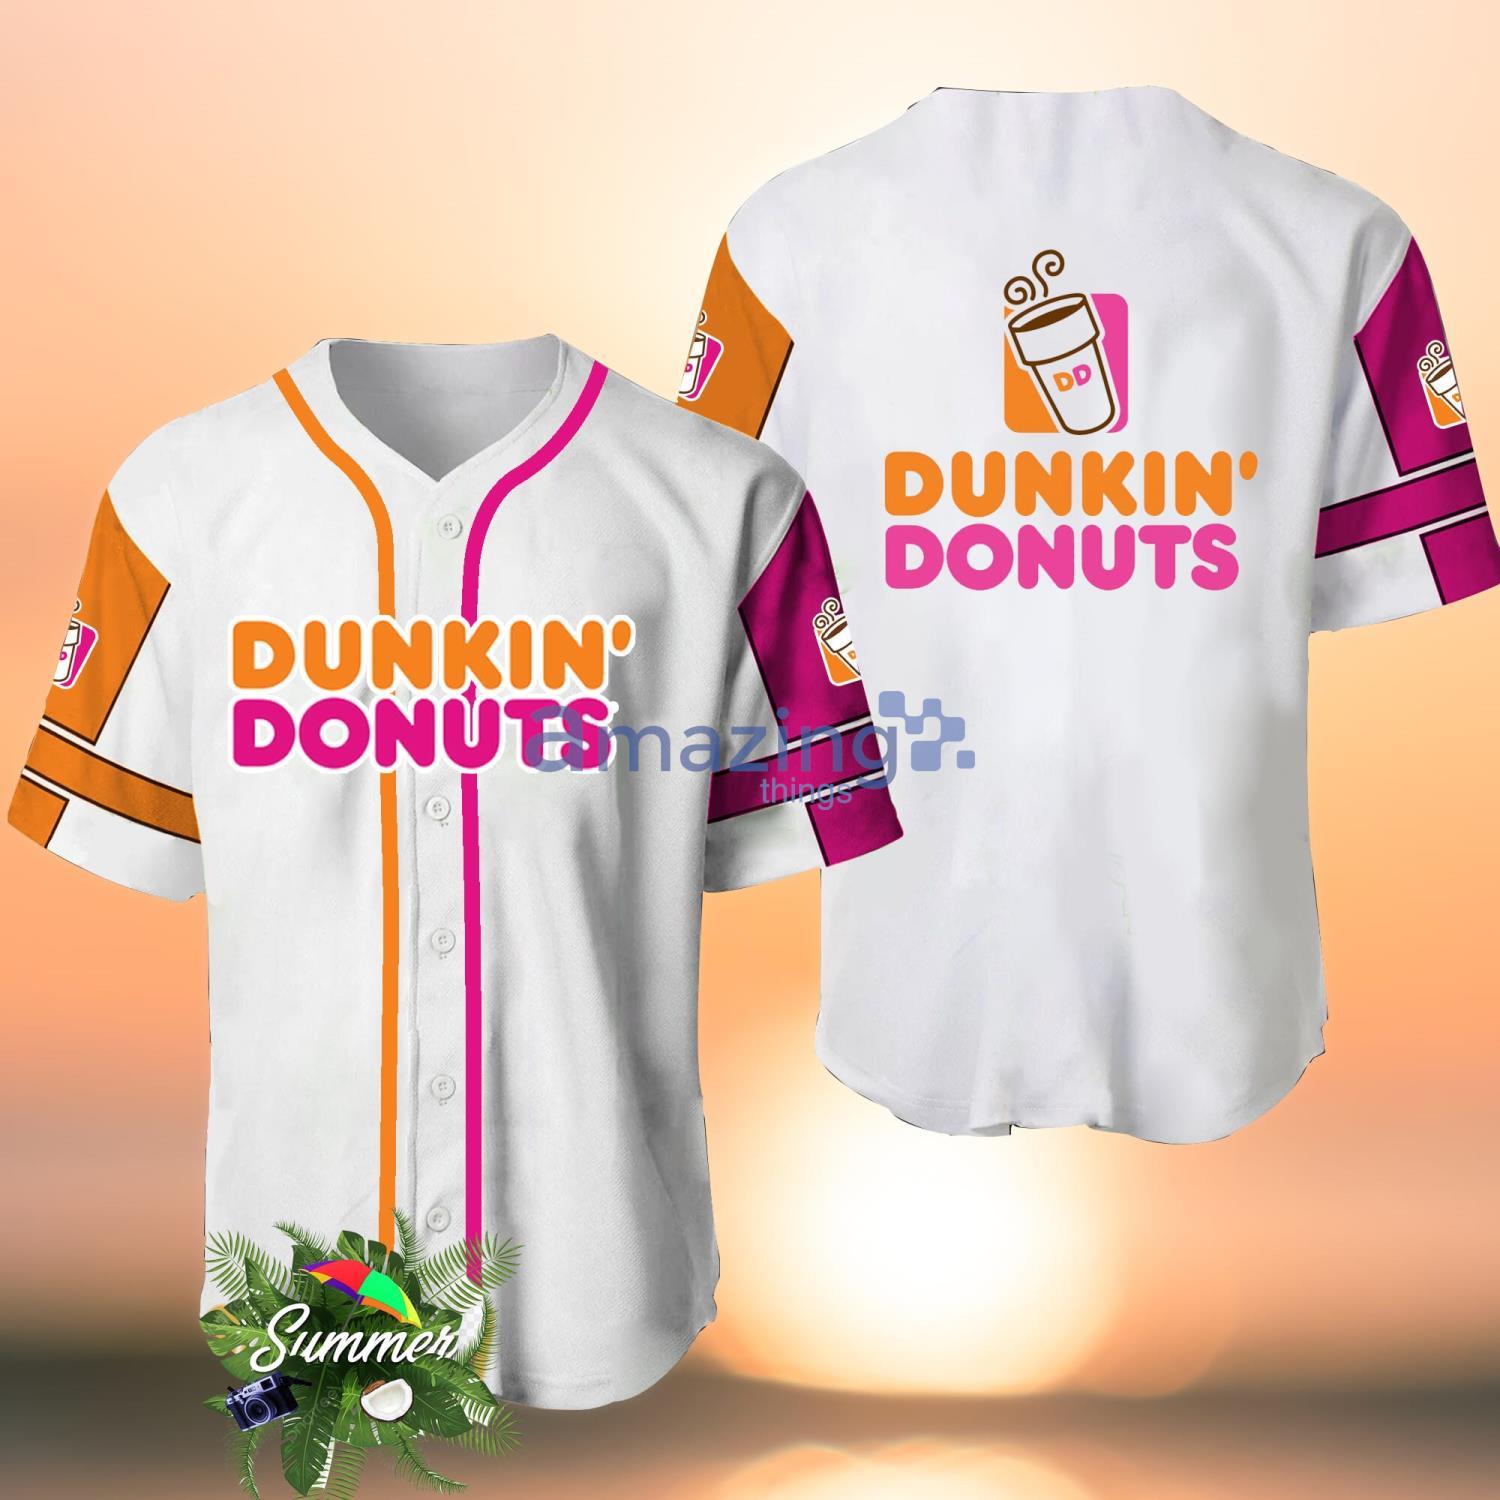 BagLore Dunkin Donuts Baseball Jersey Shirt, Dunkin Donuts Jersey, Fast Food Baseball Shirt, Adult Kid Baseball Uniform, Dunkin Donuts Lover Gift